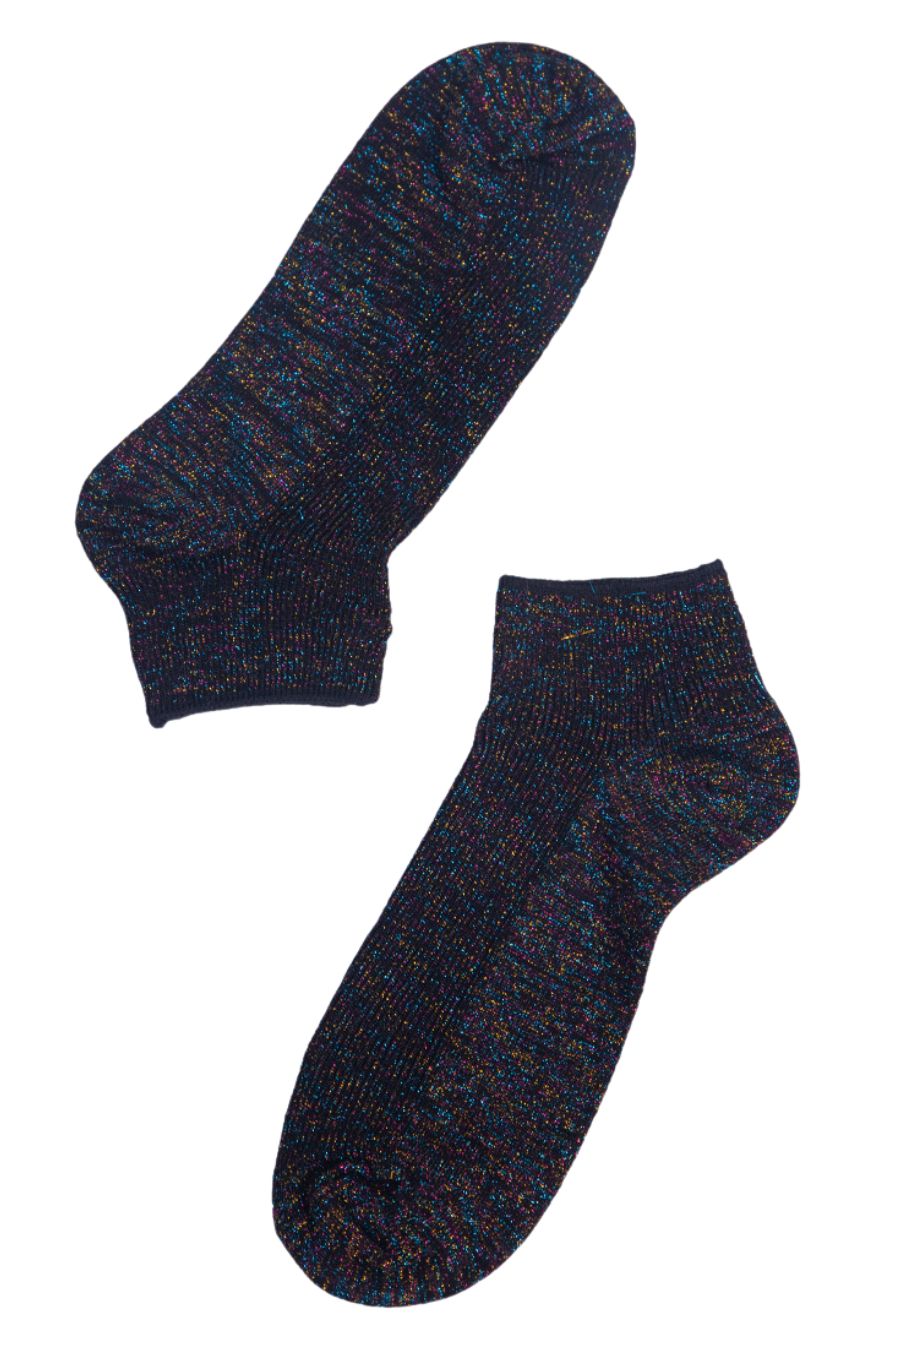 black and rainbow glitter women's anklet socks